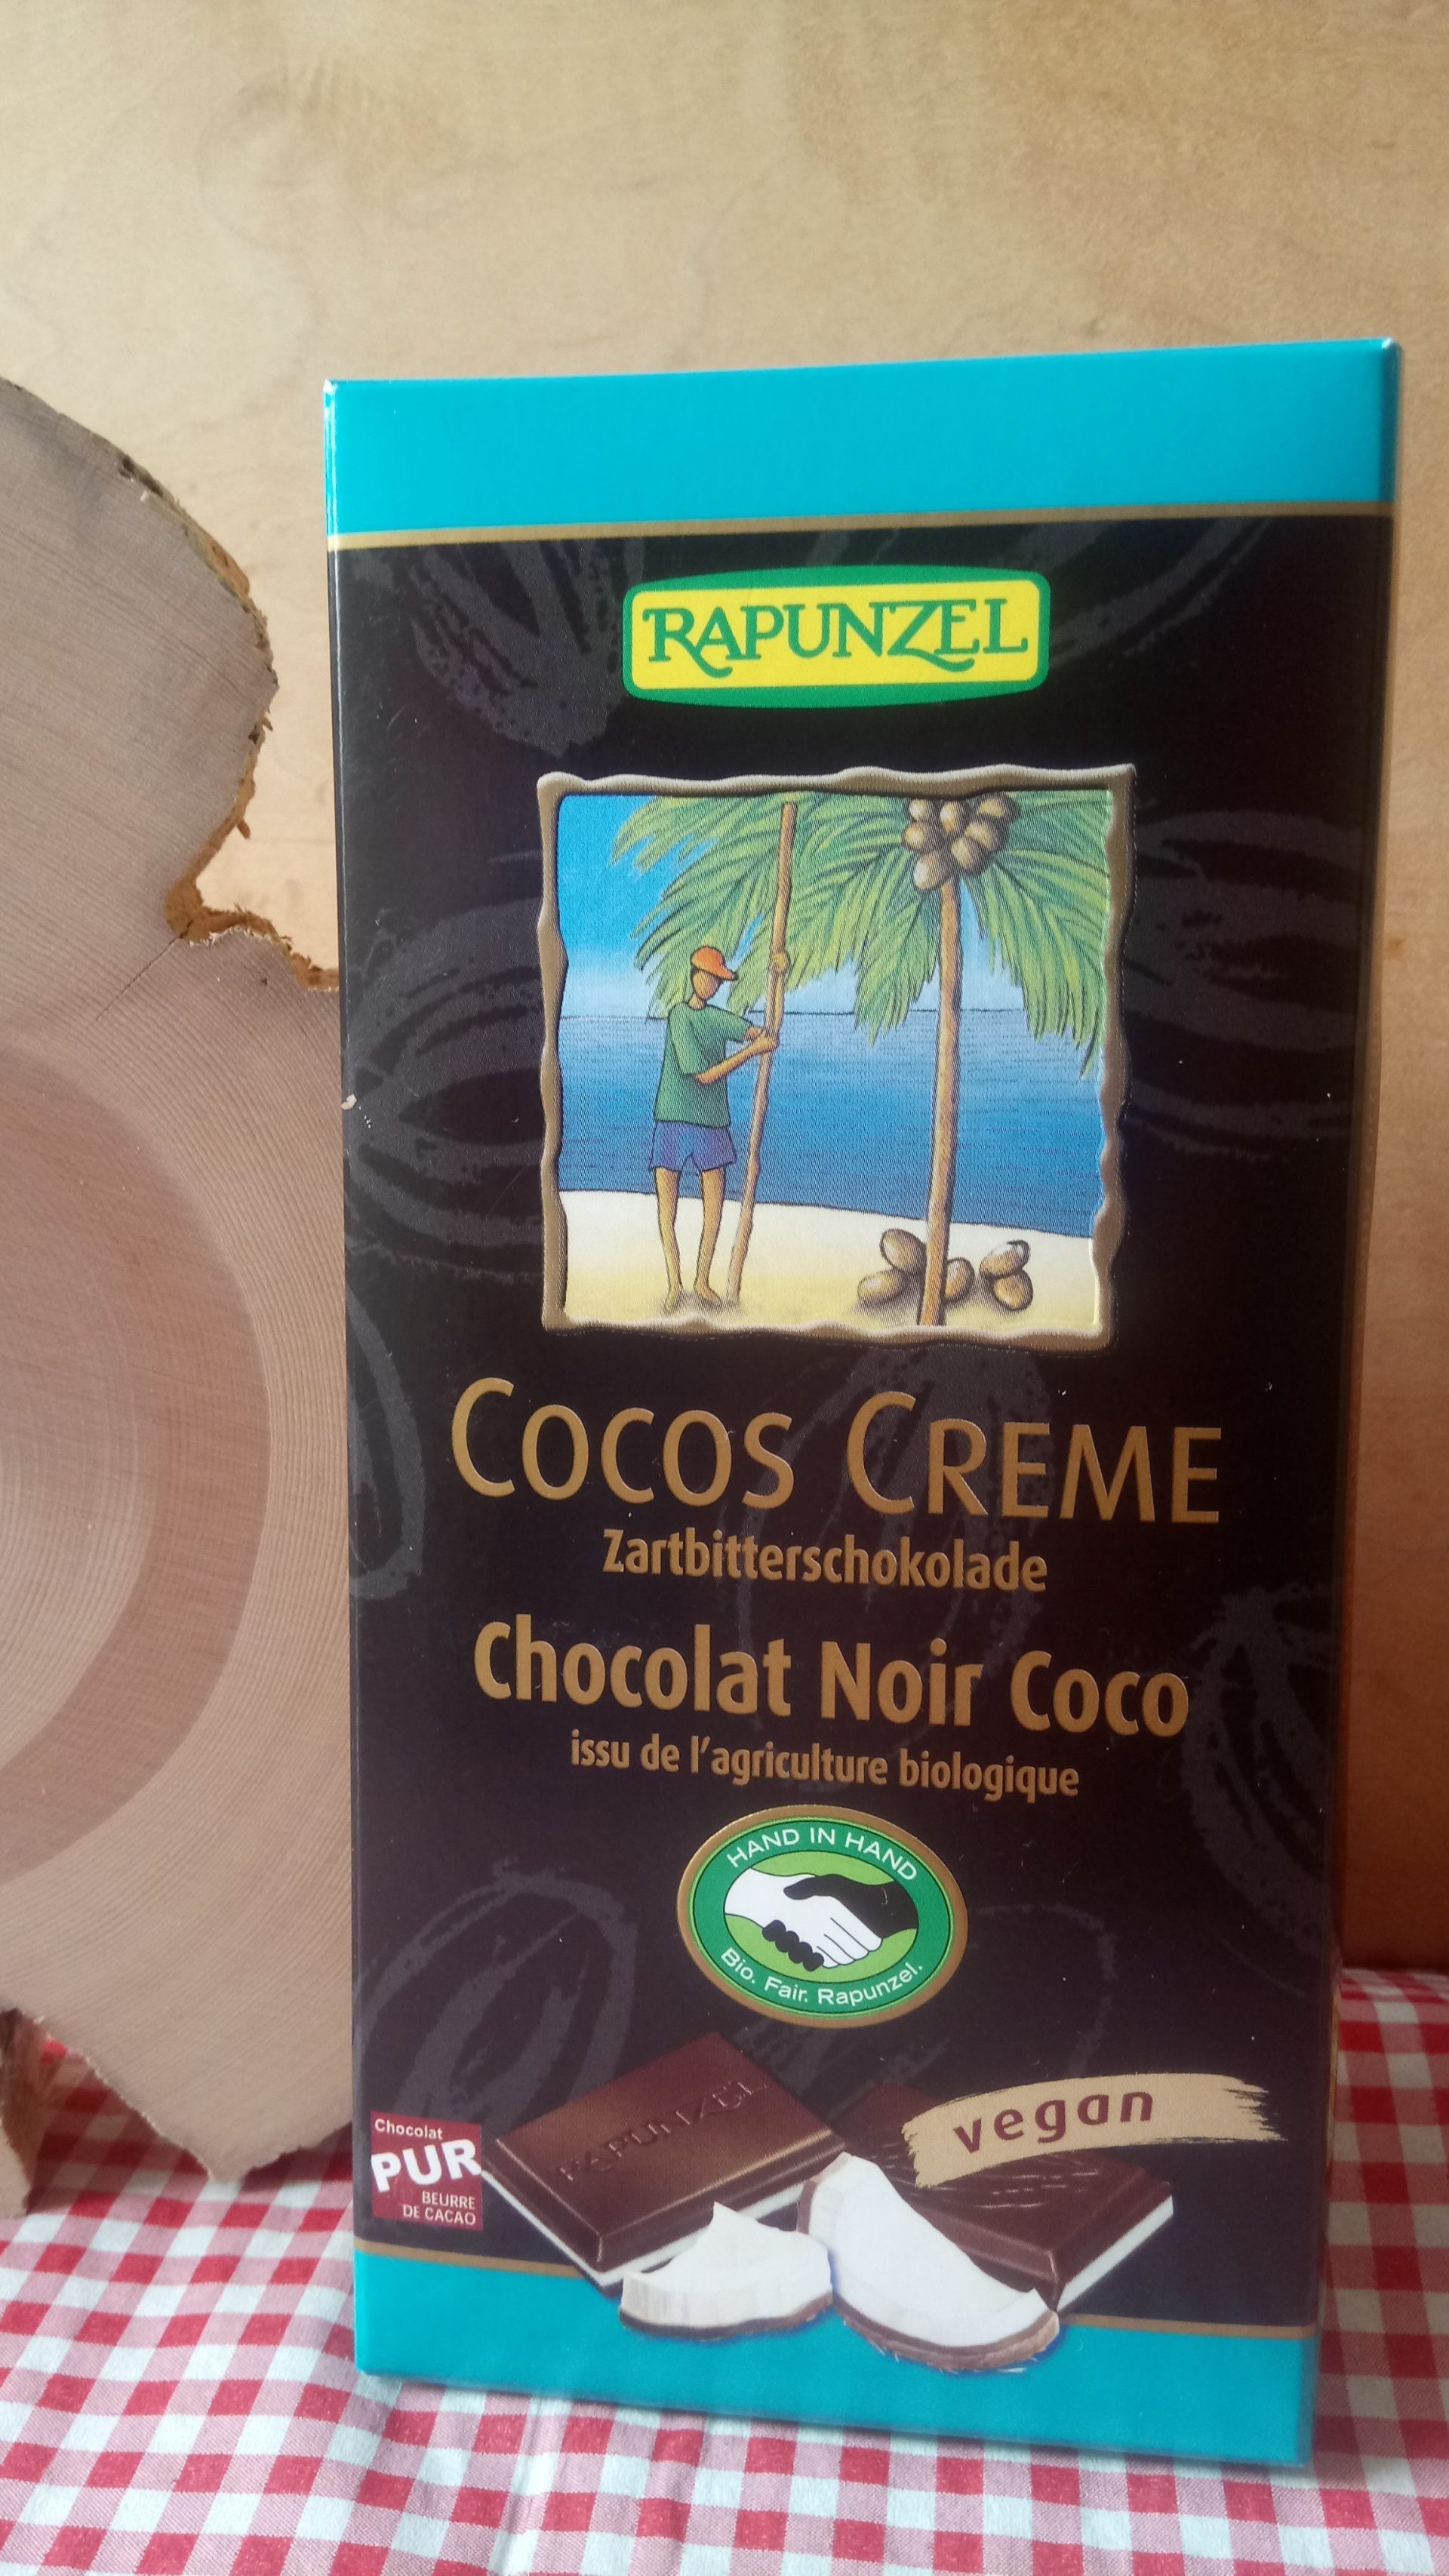 Vegane Zartbitterschokolade Cocos Creme von Rapunzel - Hand in Hand ...